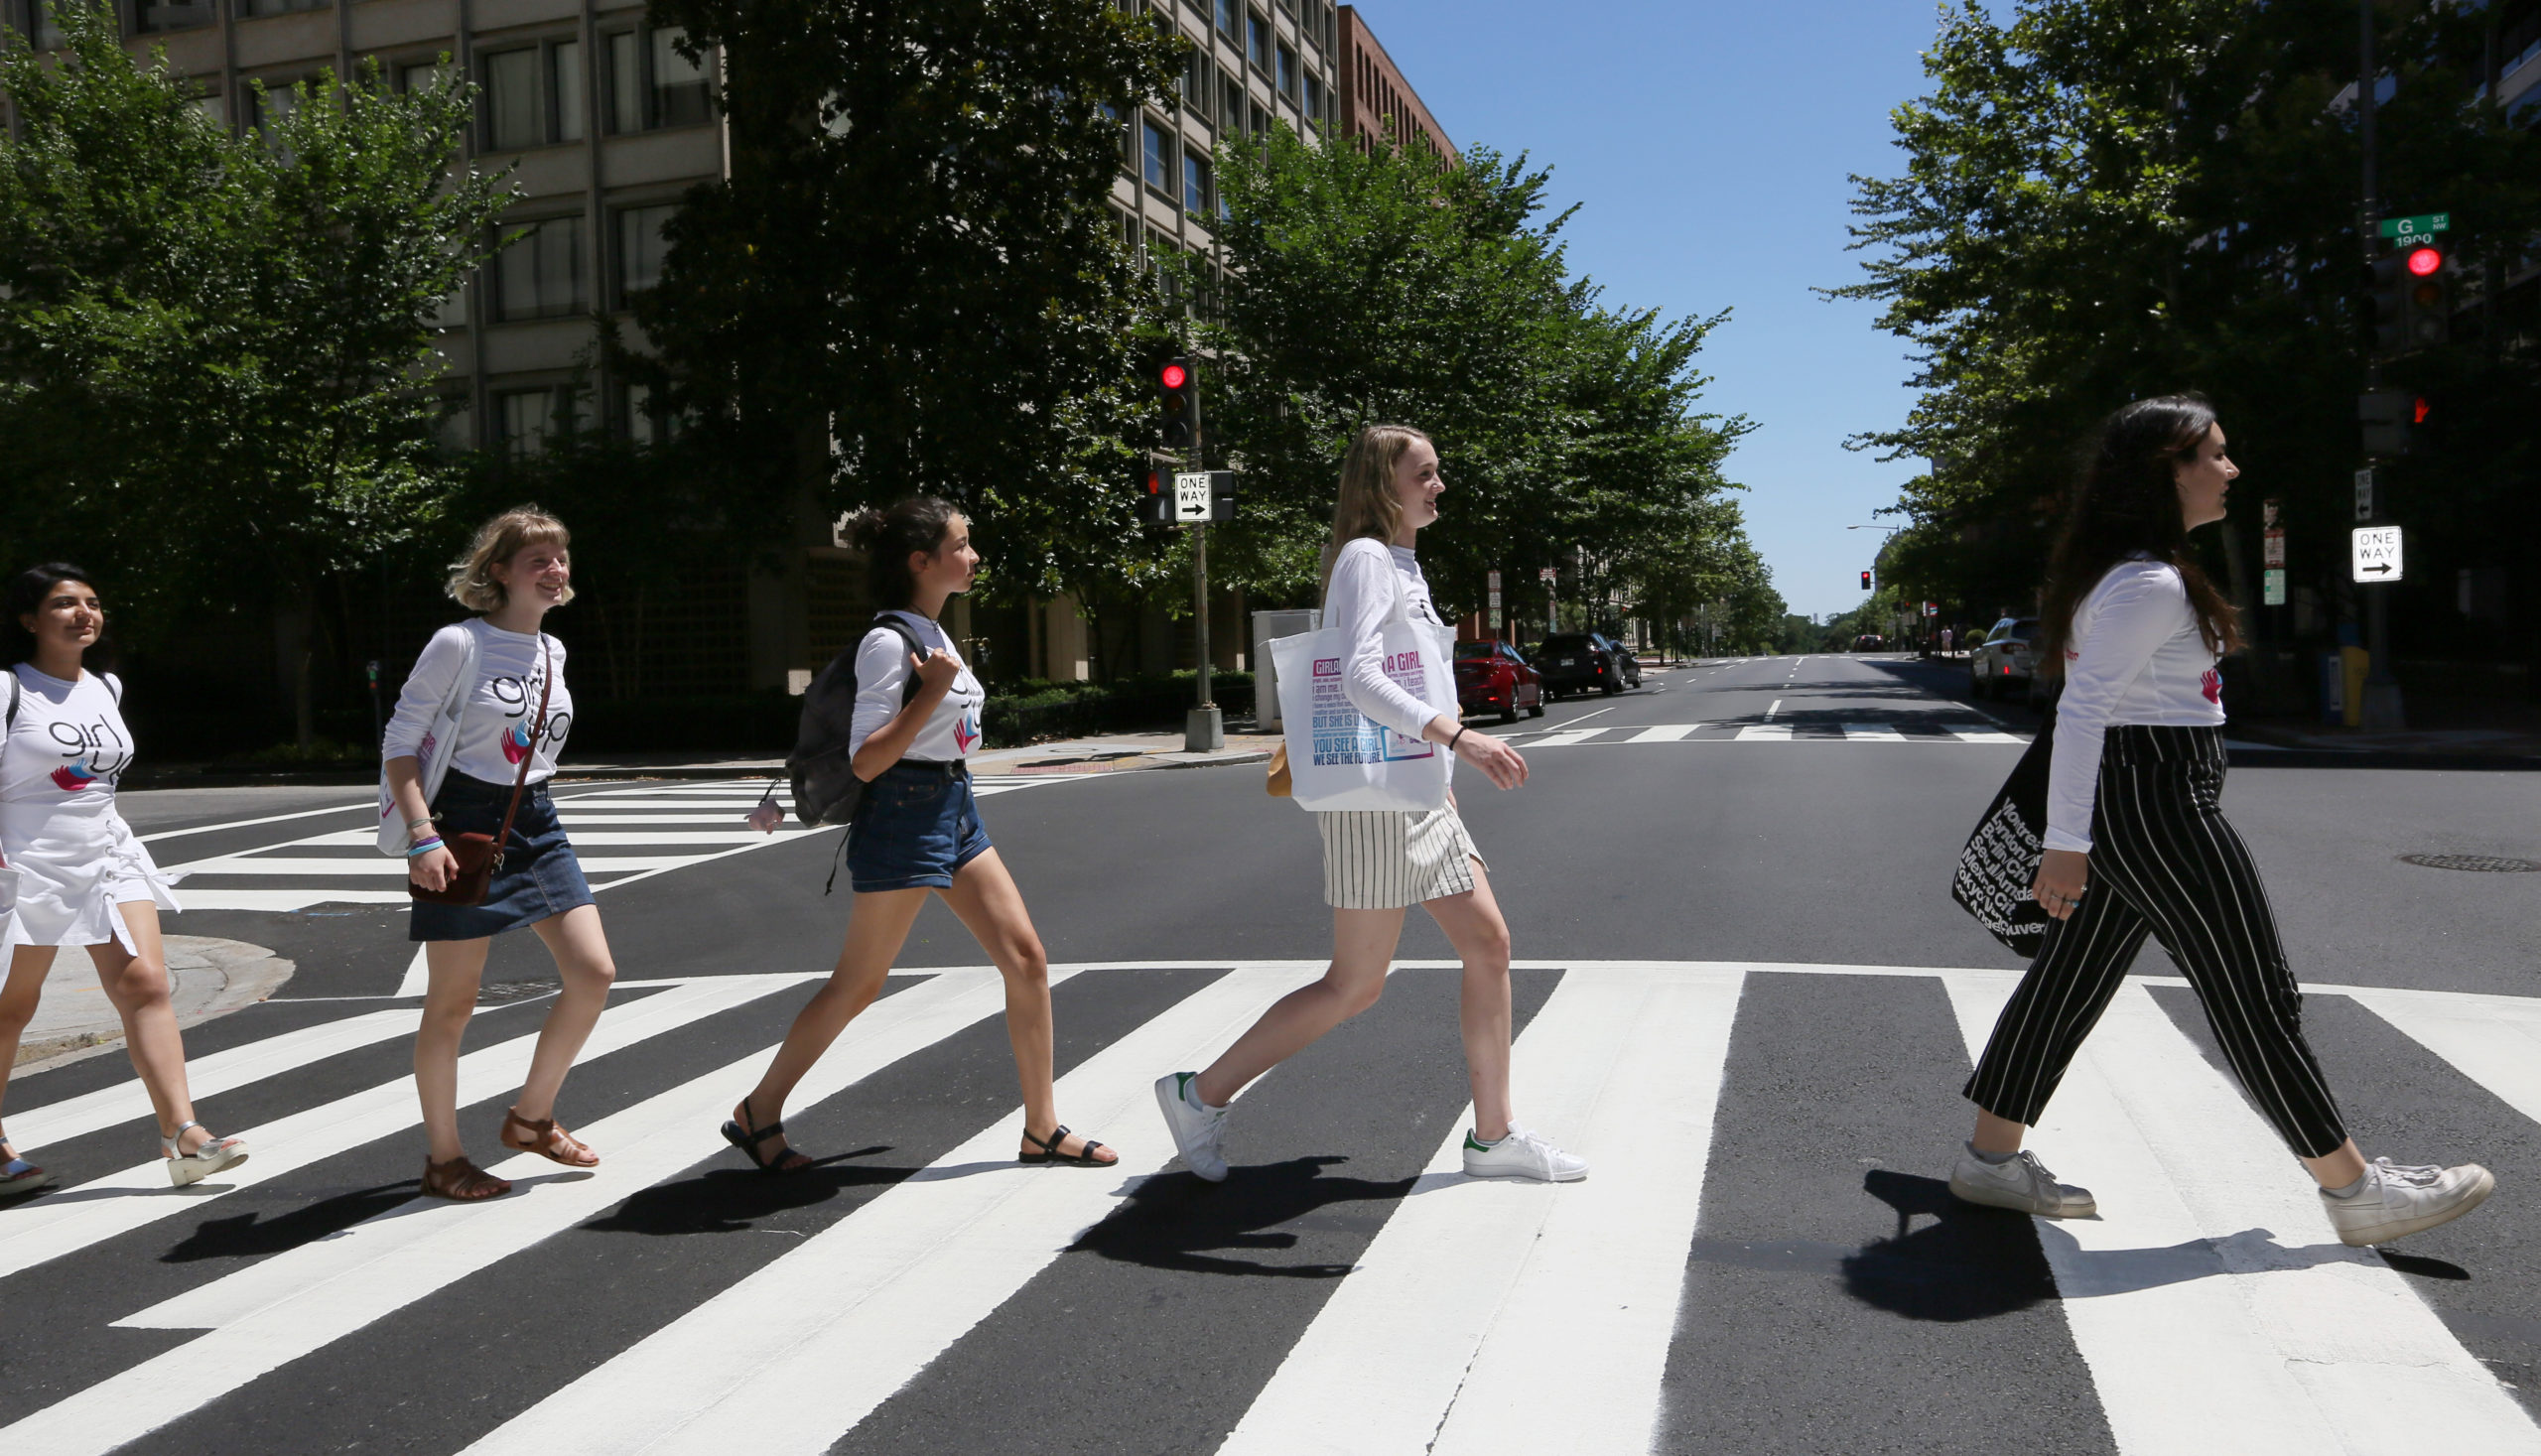 Cinco chicas cruzan la calle una tras otra mirando al frente con sus camisetas de Consejeras adolescentes.